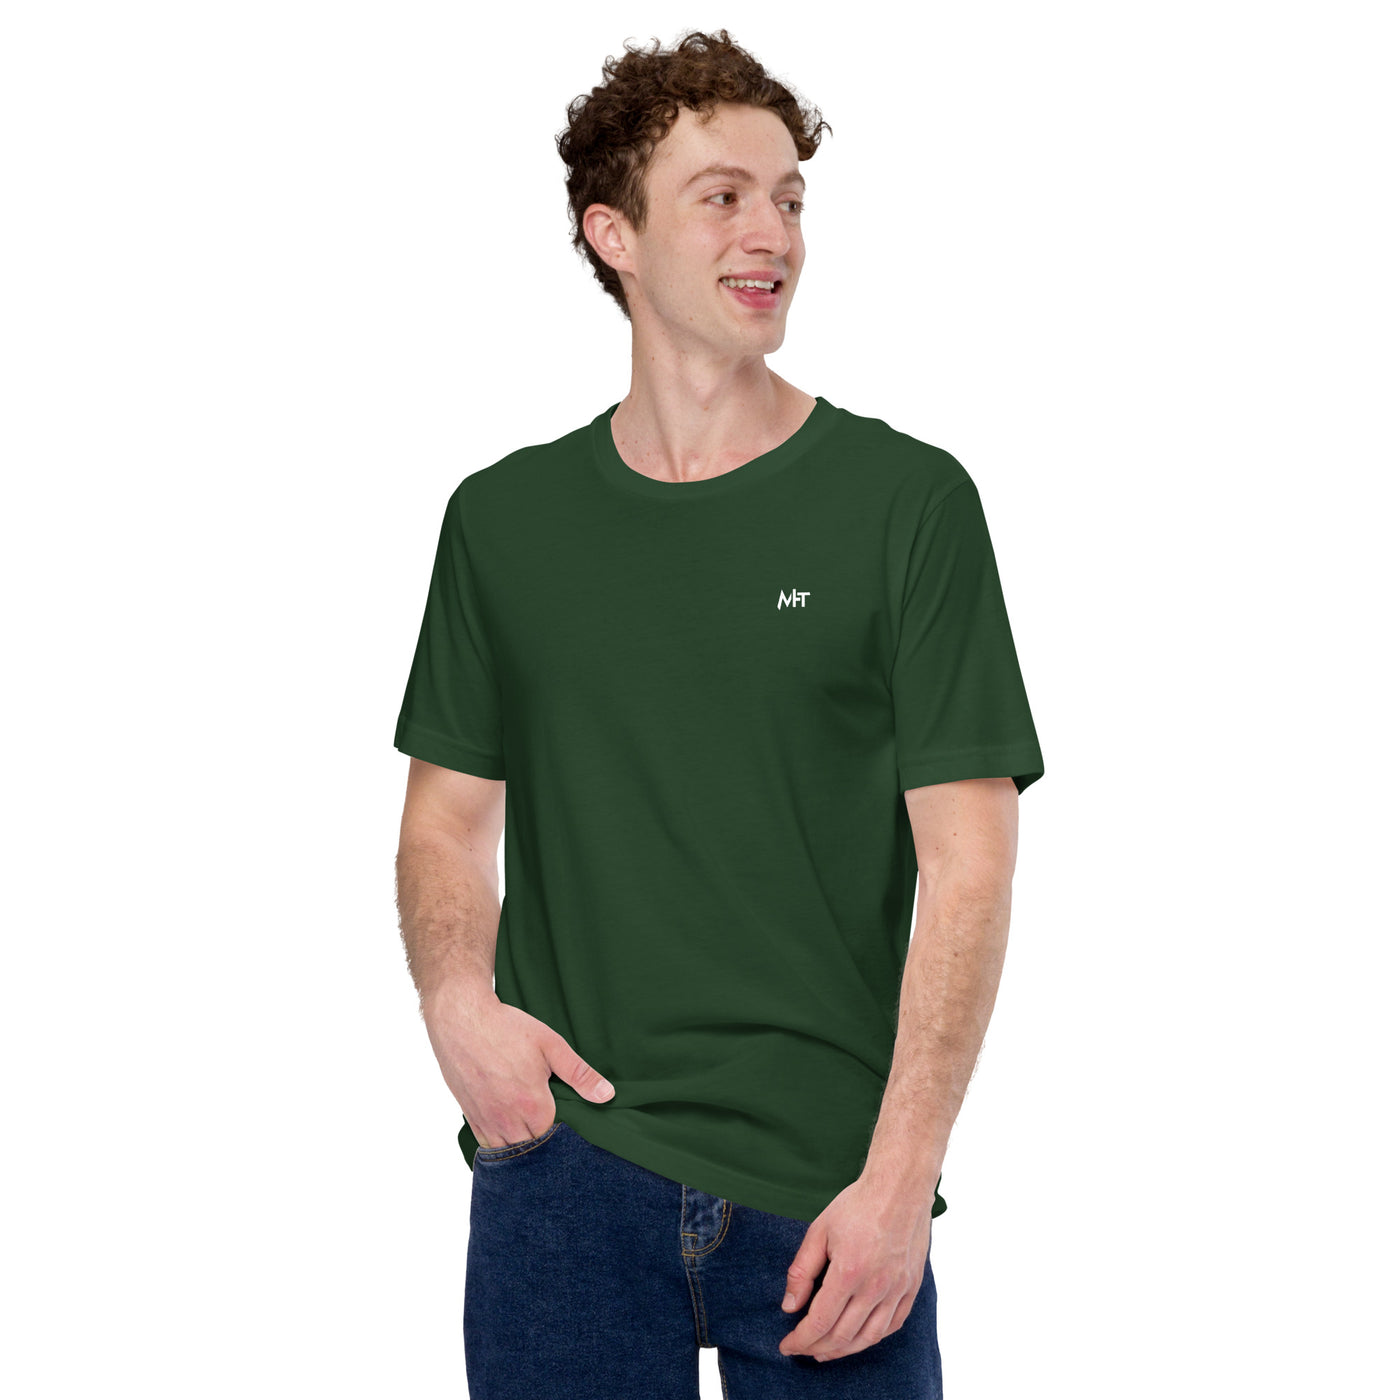 Full stack developer - Unisex t-shirt ( Back Print )